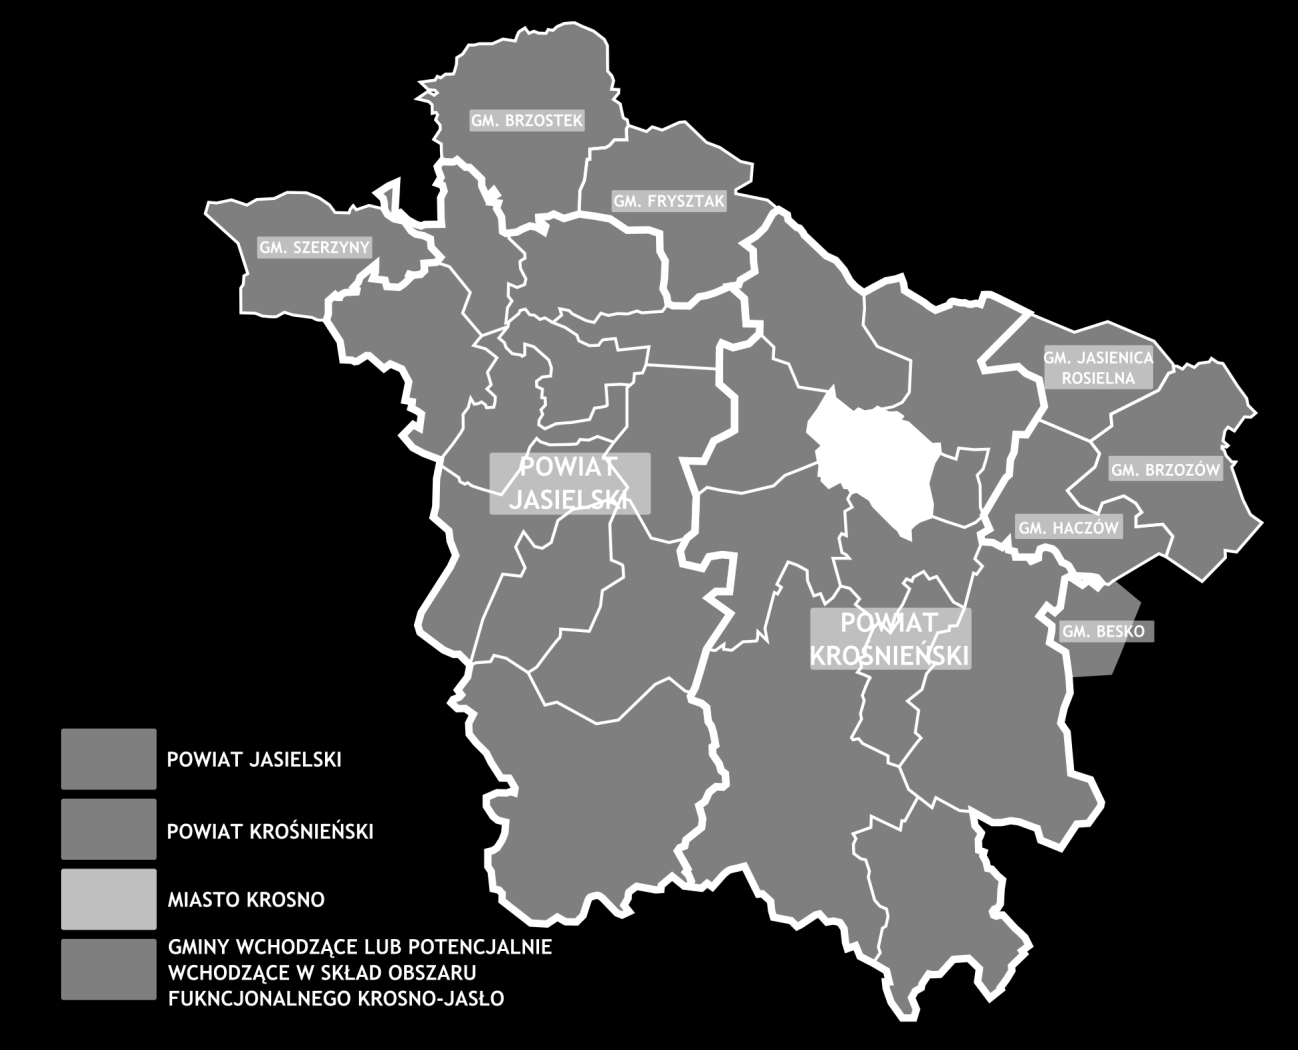 2.1 Informacje ogólne Mapa 1. Jednostki terytorialne wchodzące w skład planu transportowego dla funkcjonalnego obszaru krośnieńsko-jasielskiego Źródło: Opracowanie własne na podstawie www.mapy.